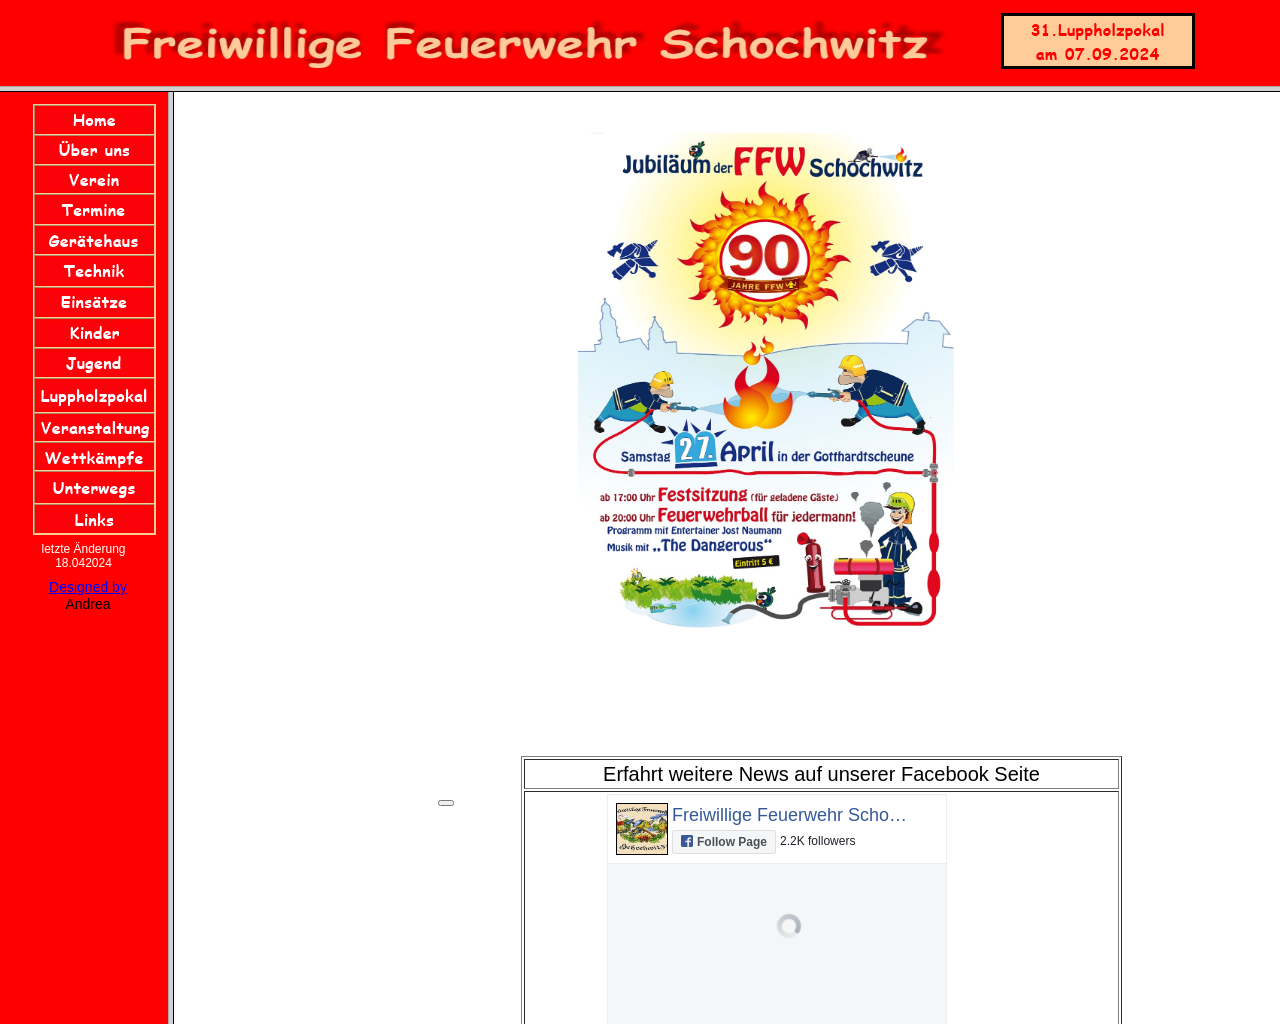 ff-schochwitz.de